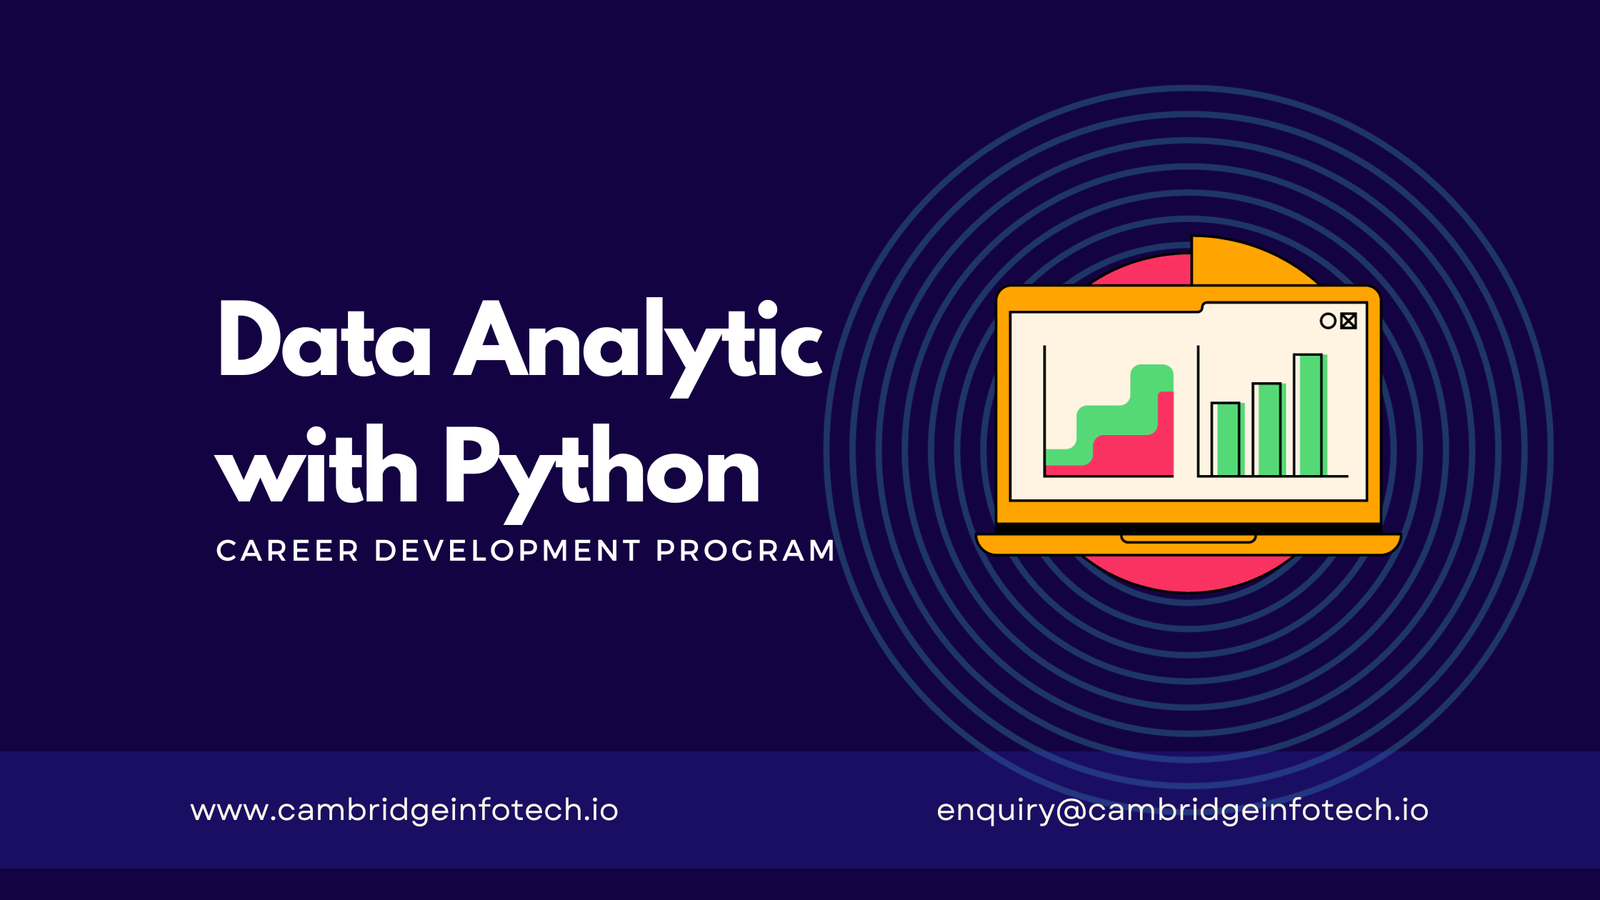 Data Analytics with Python Training in Bangalore